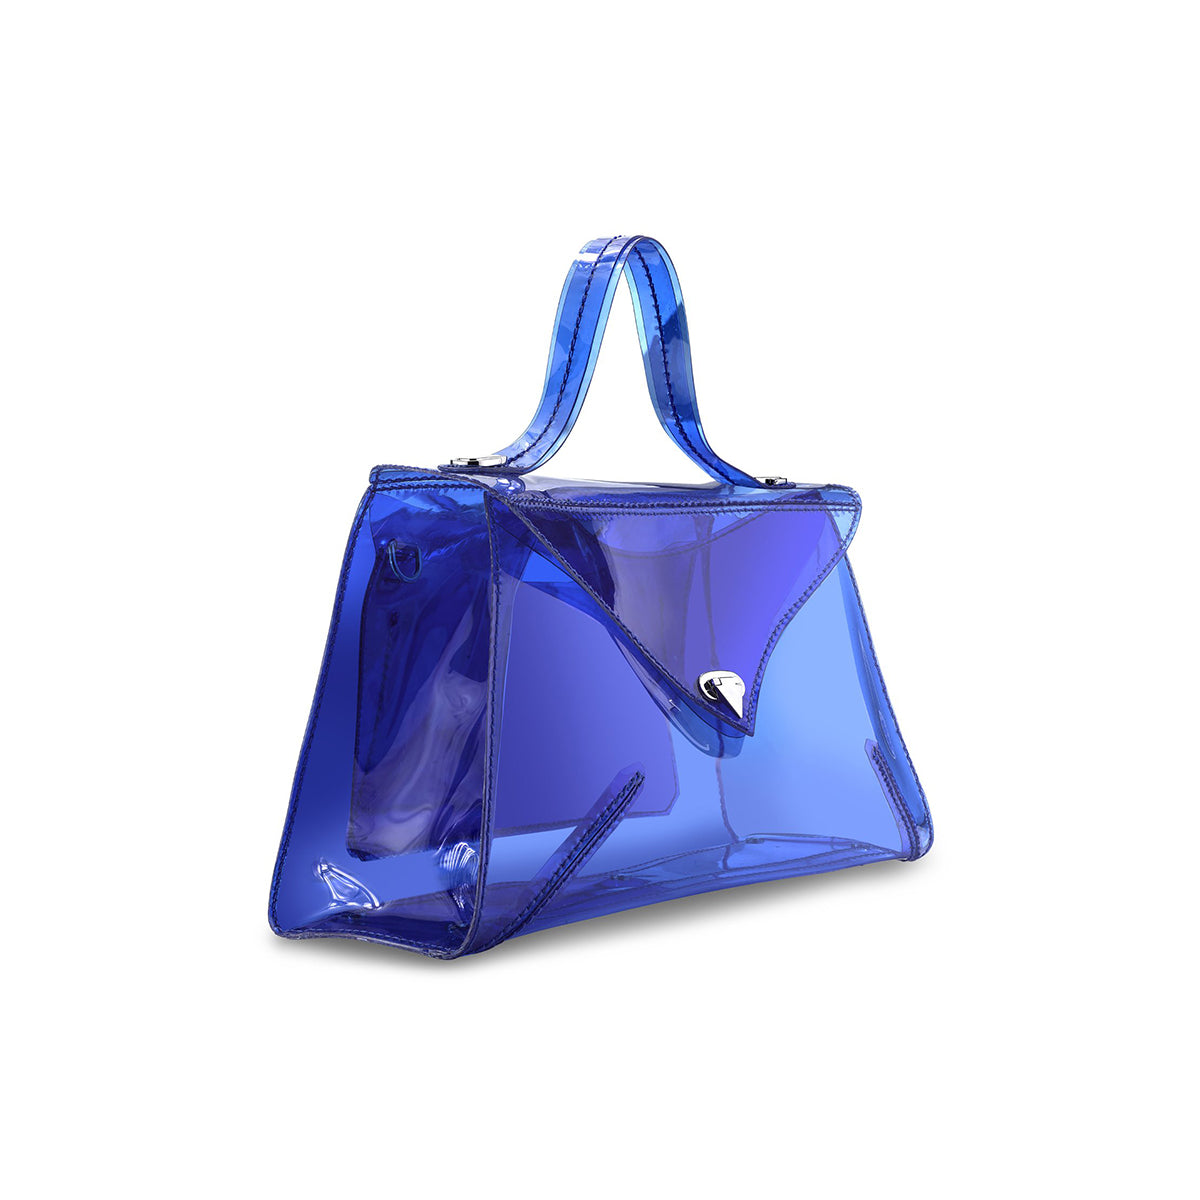 LJ Small 'Jelly' Handbag